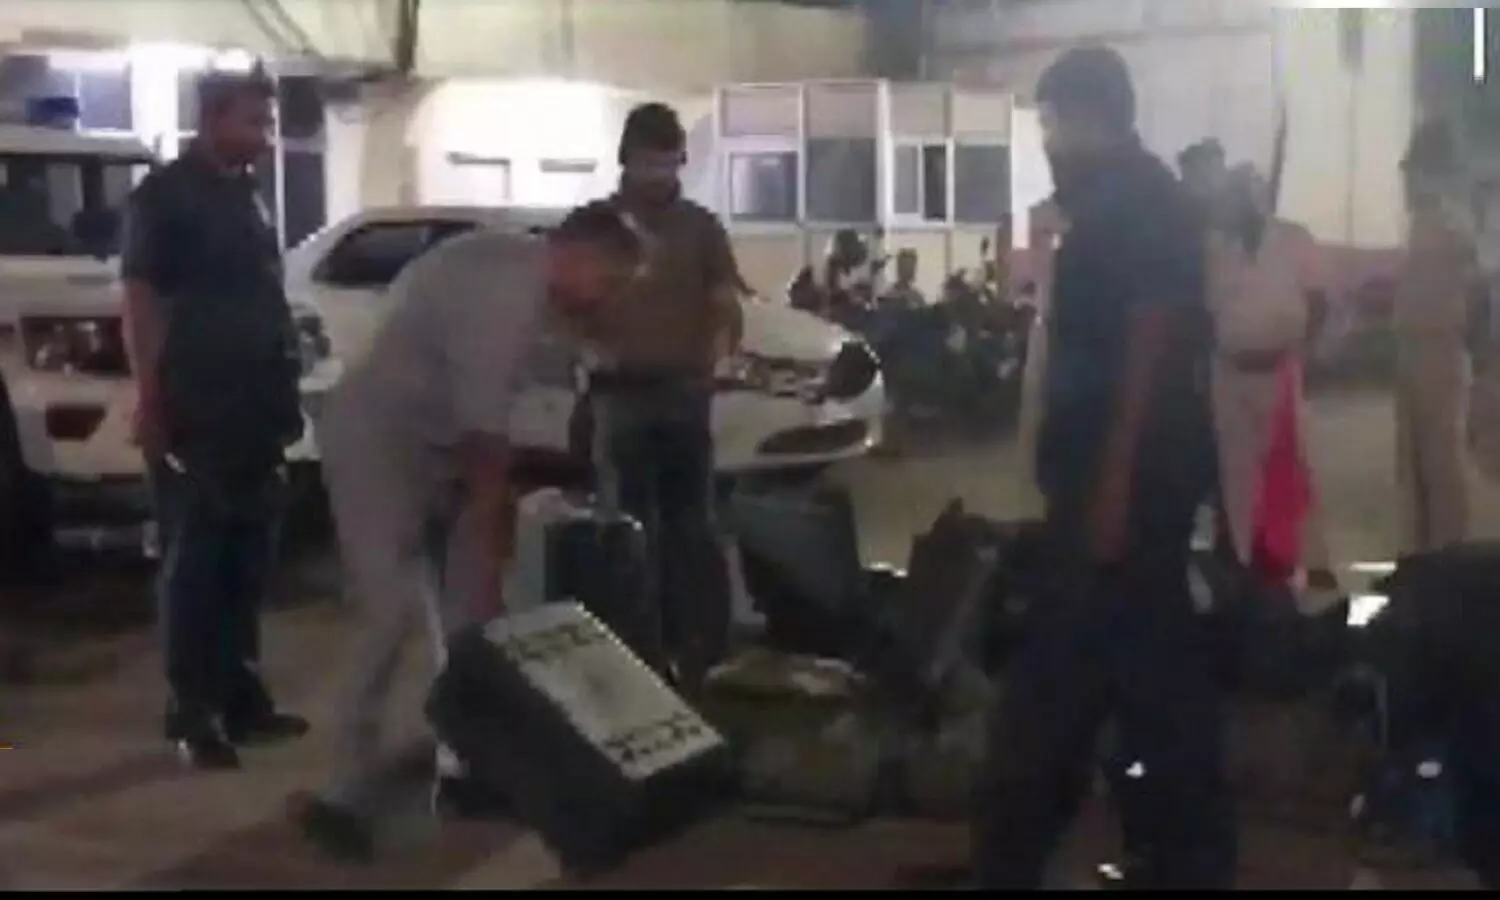 Bomb Threat: पटना-दिल्ली फ्लाइट में बम की सूचना से हड़कम्प, रोकी गई हवाई जहाज, पुलिस छावनी में तब्दील हुआ एयरपोर्ट